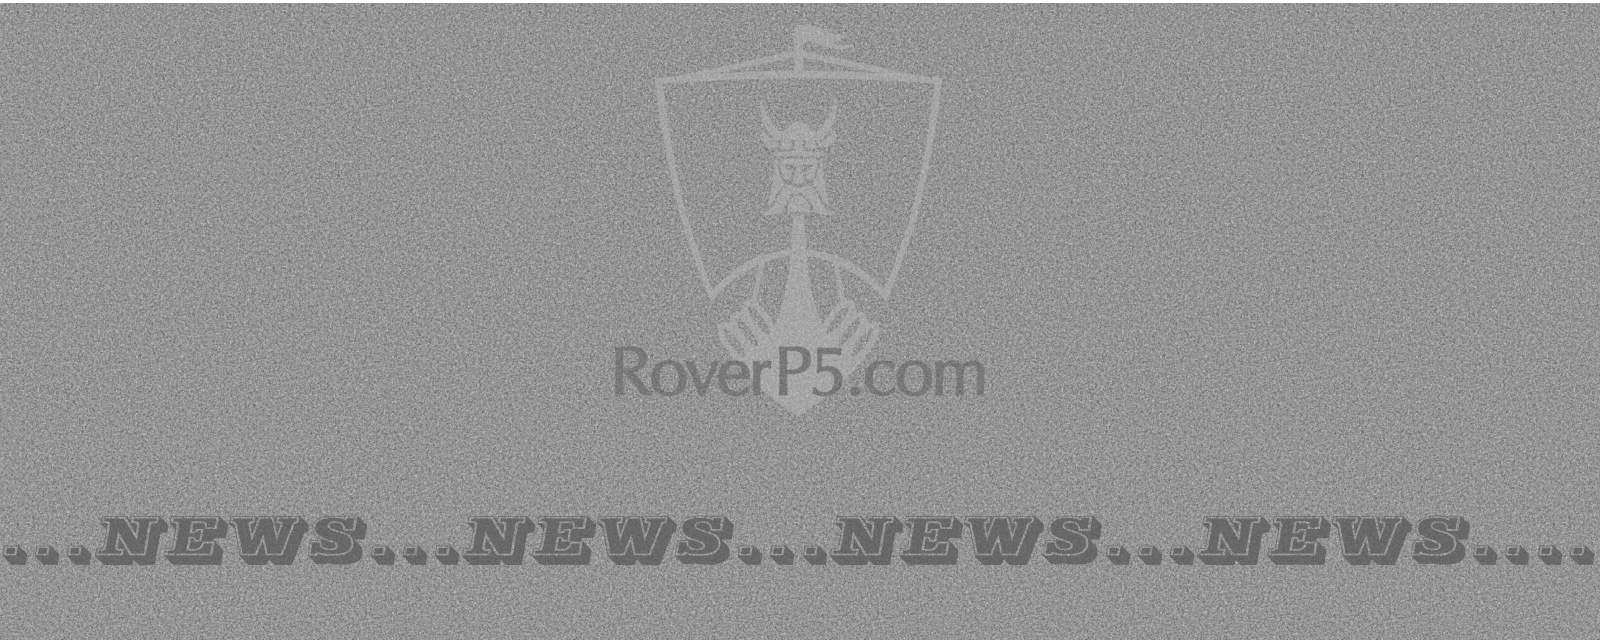 Rover P5B Crashes Into Garden in Torquay, England